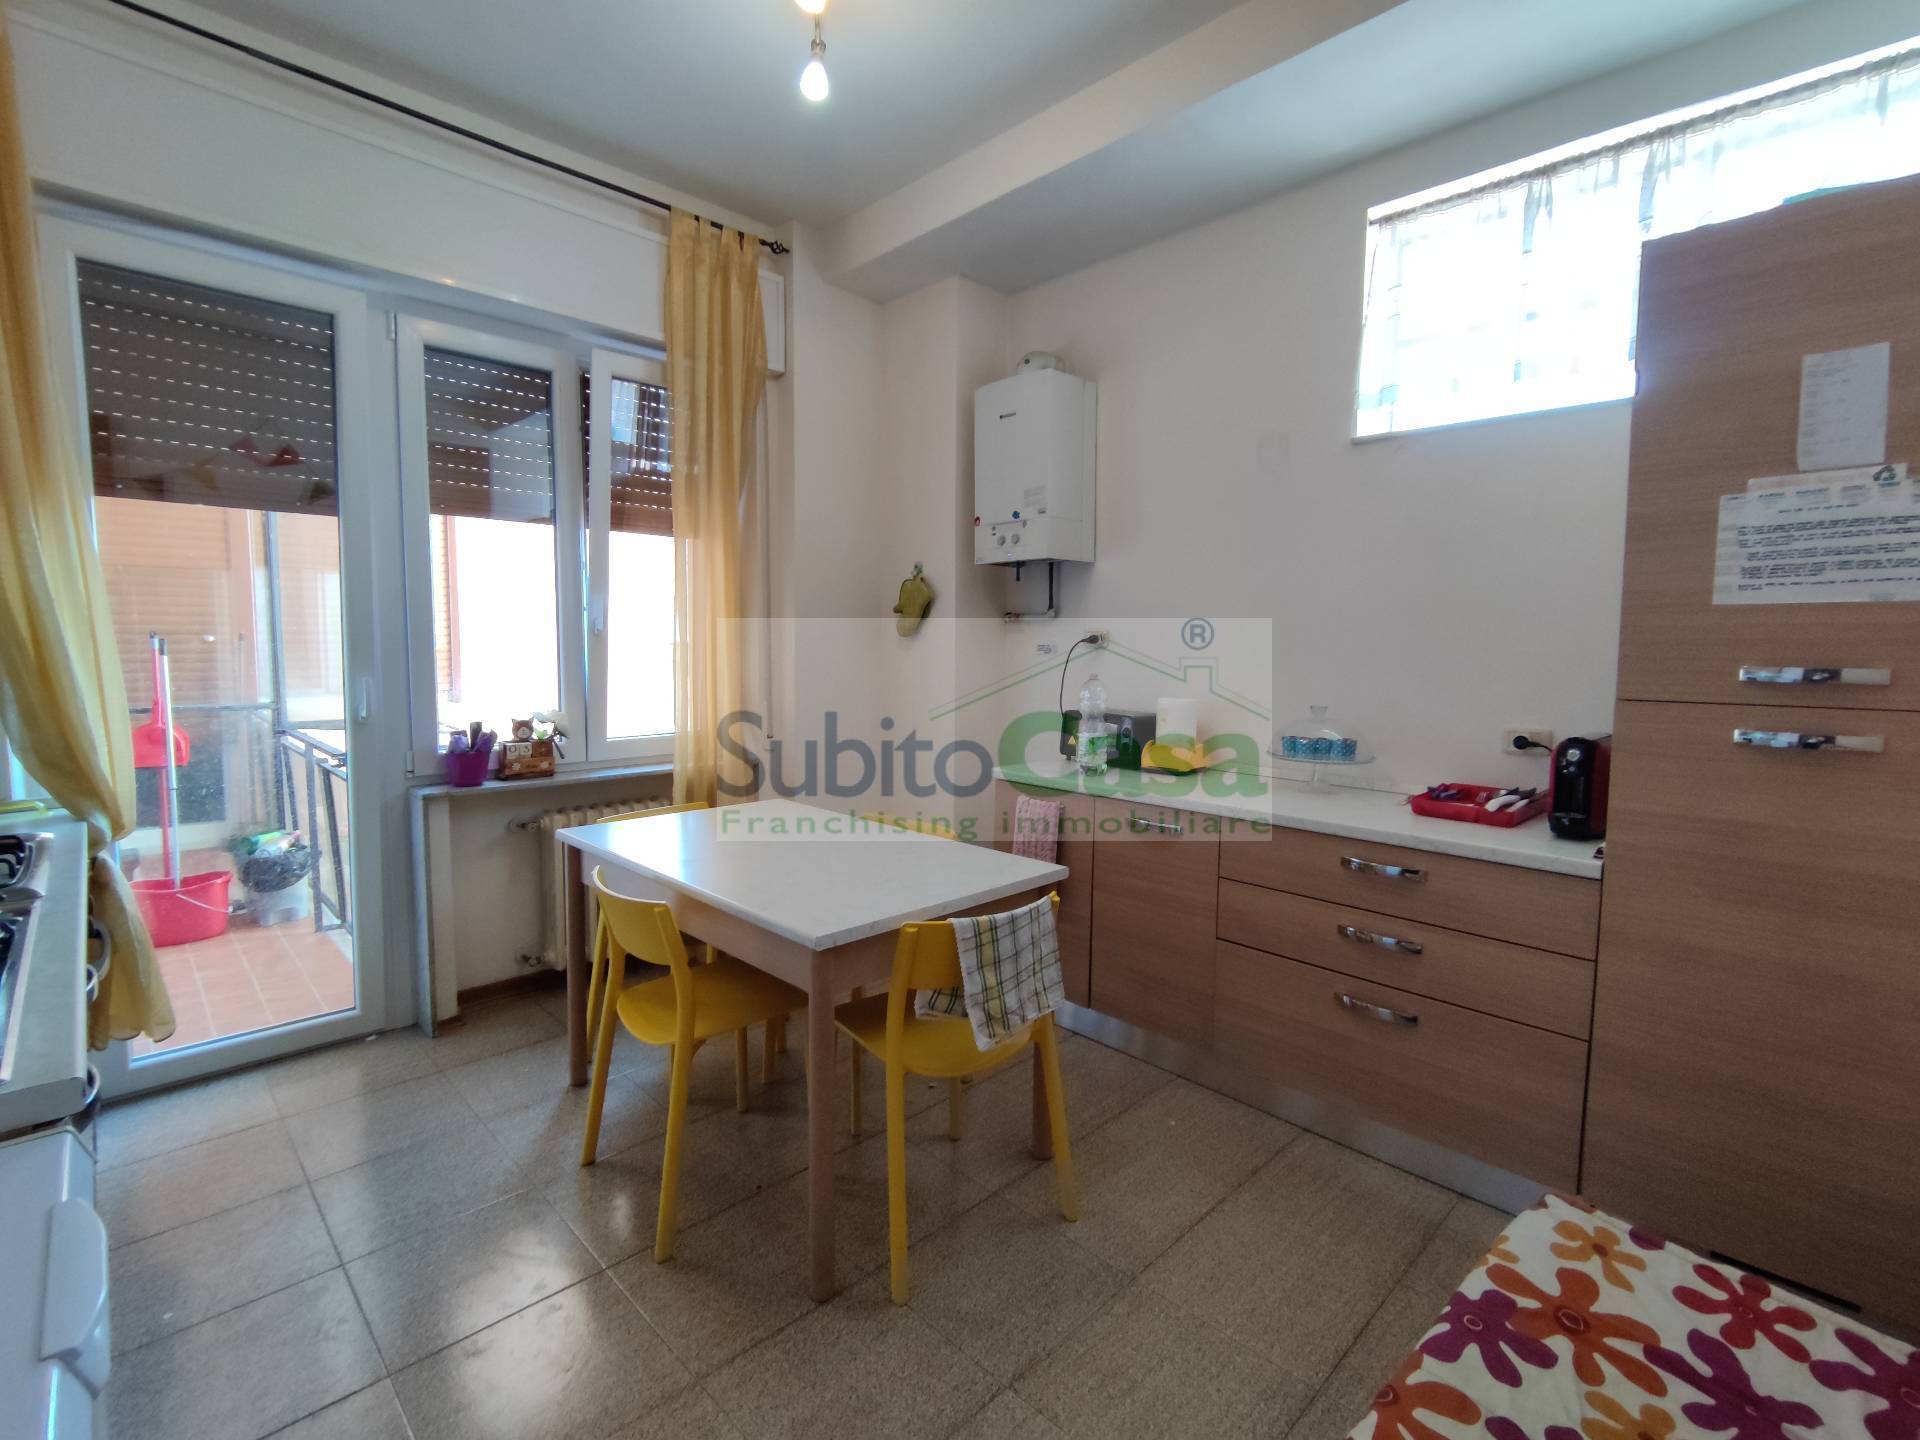 Appartamento in affitto a Chieti, 5 locali, zona Località: ChietiScaloZonaCentro, prezzo € 250 | PortaleAgenzieImmobiliari.it